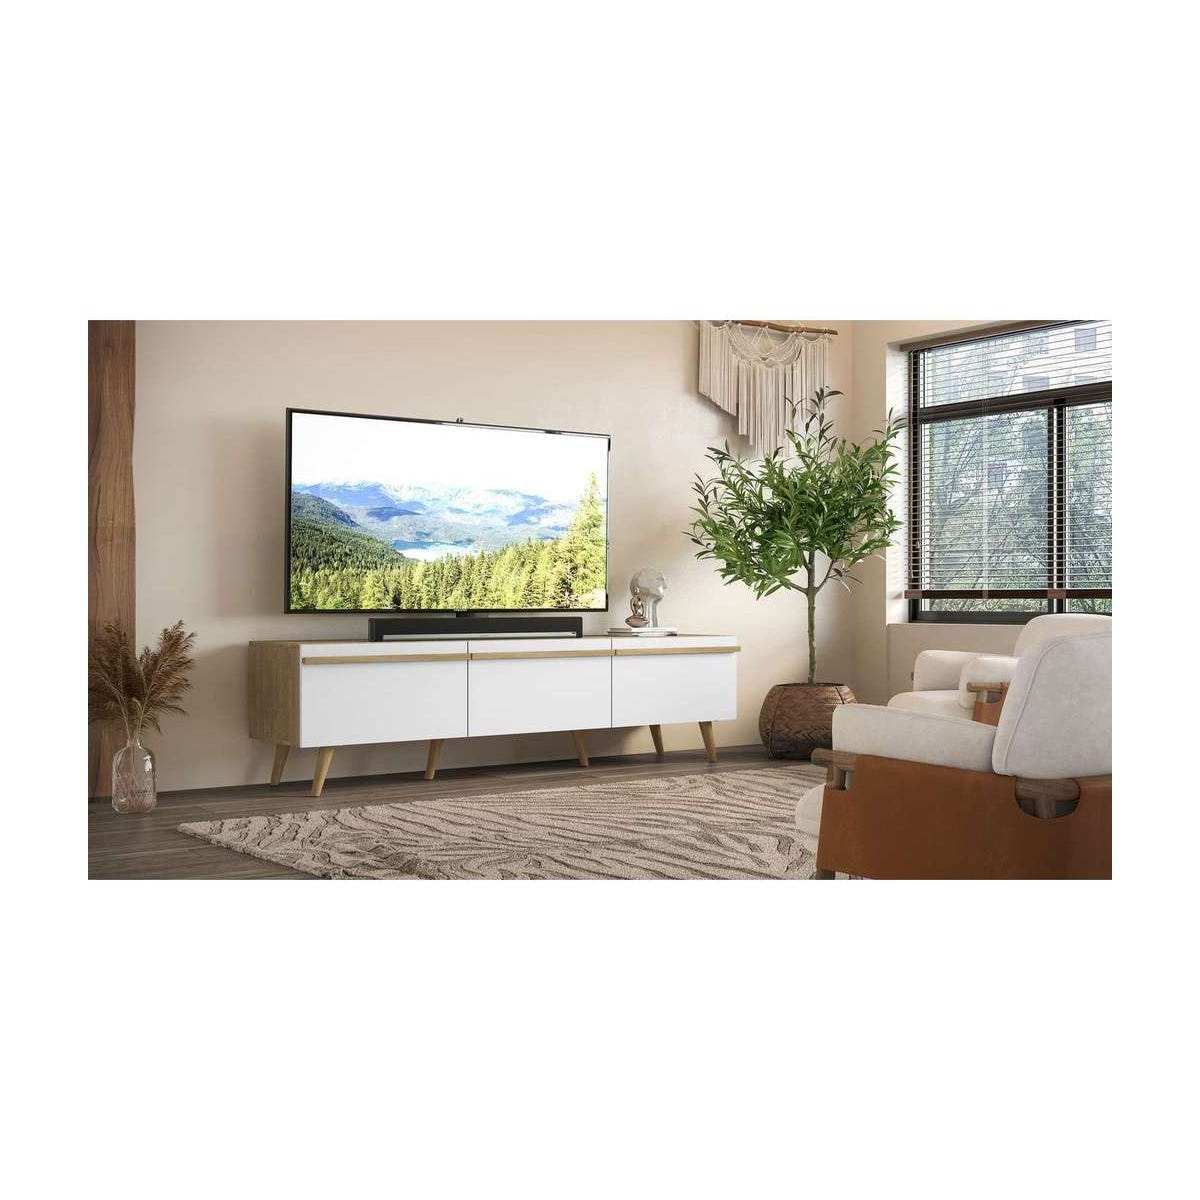 Compra tu Mueble TV barato - Diseño y Estilo